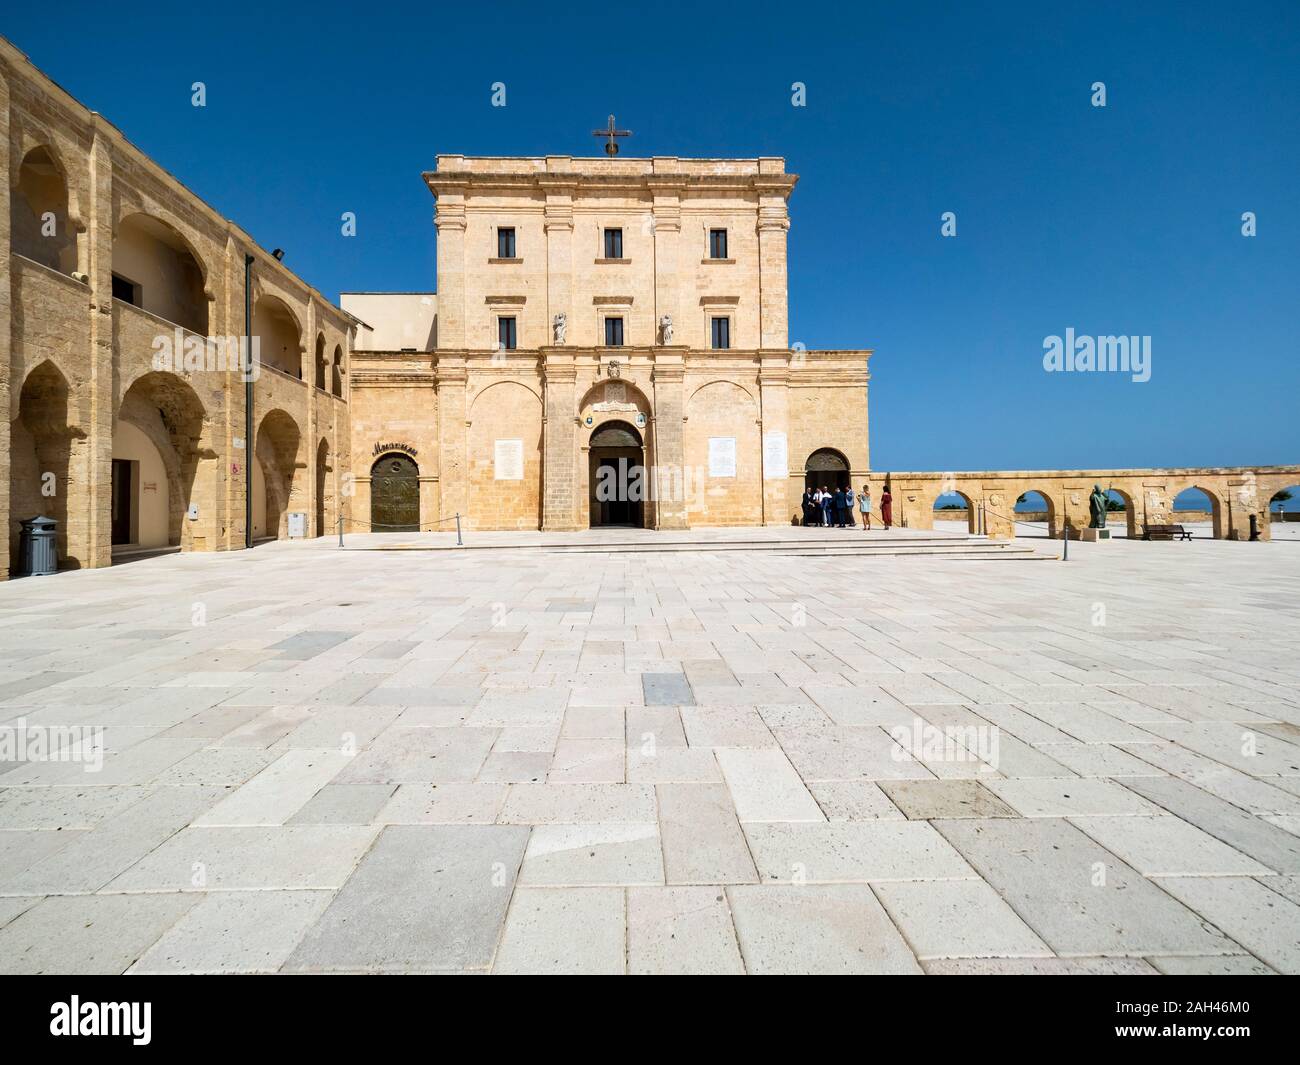 Italia, in provincia di Lecce e Santa Maria di Leuca, quadrato vuoto della Basilica Santuario di Santa Maria de finibus terrae Foto Stock